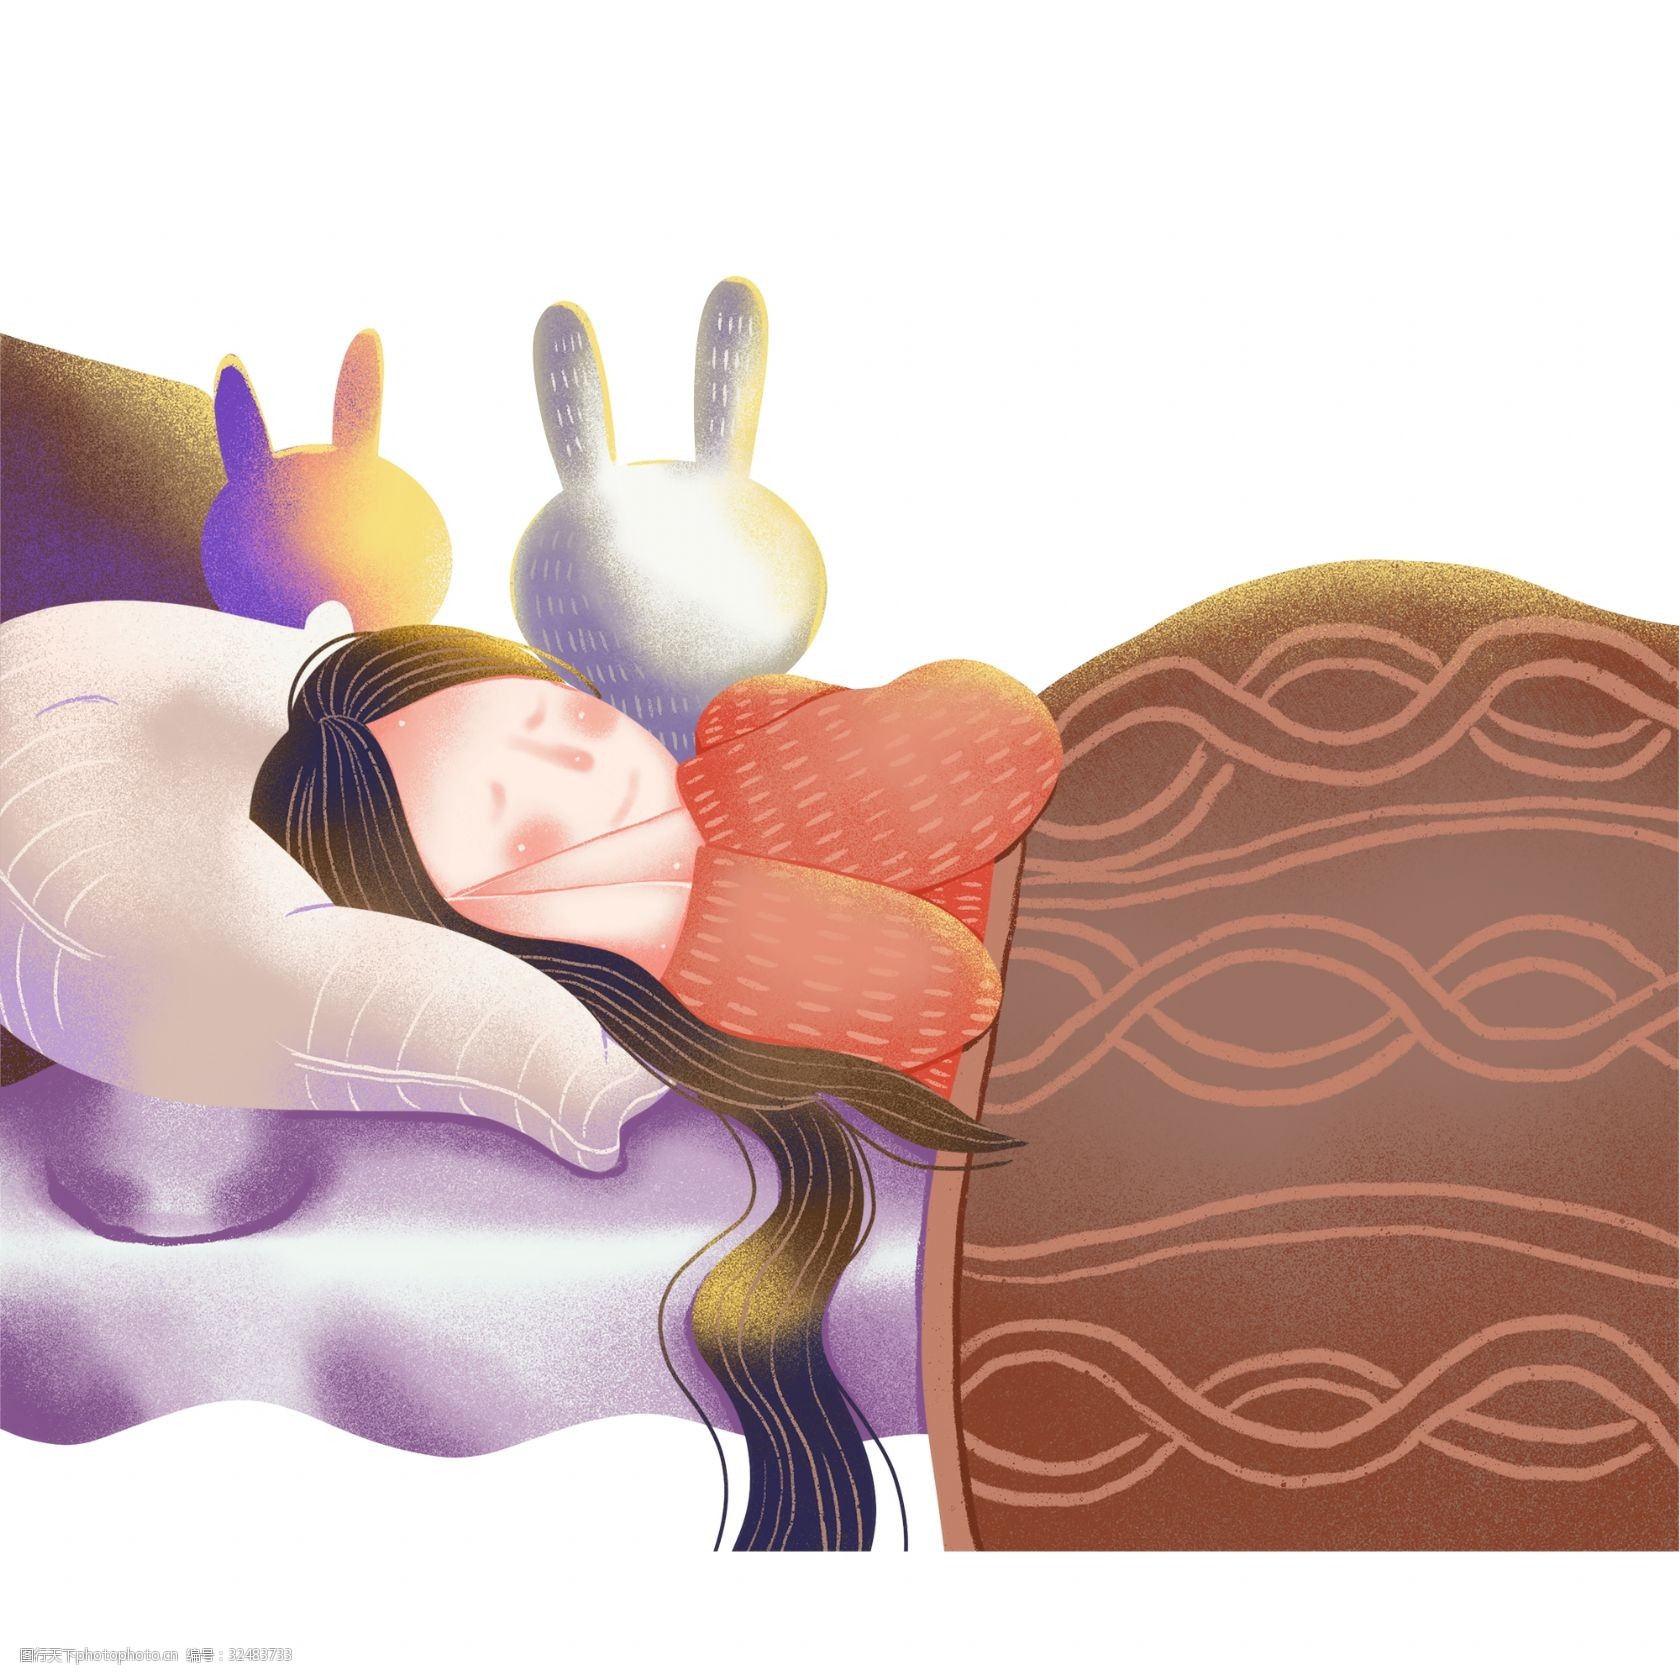 关键词:可爱女孩睡觉插画 人物 女孩 睡觉 手绘 绘画 卡通 简约 小